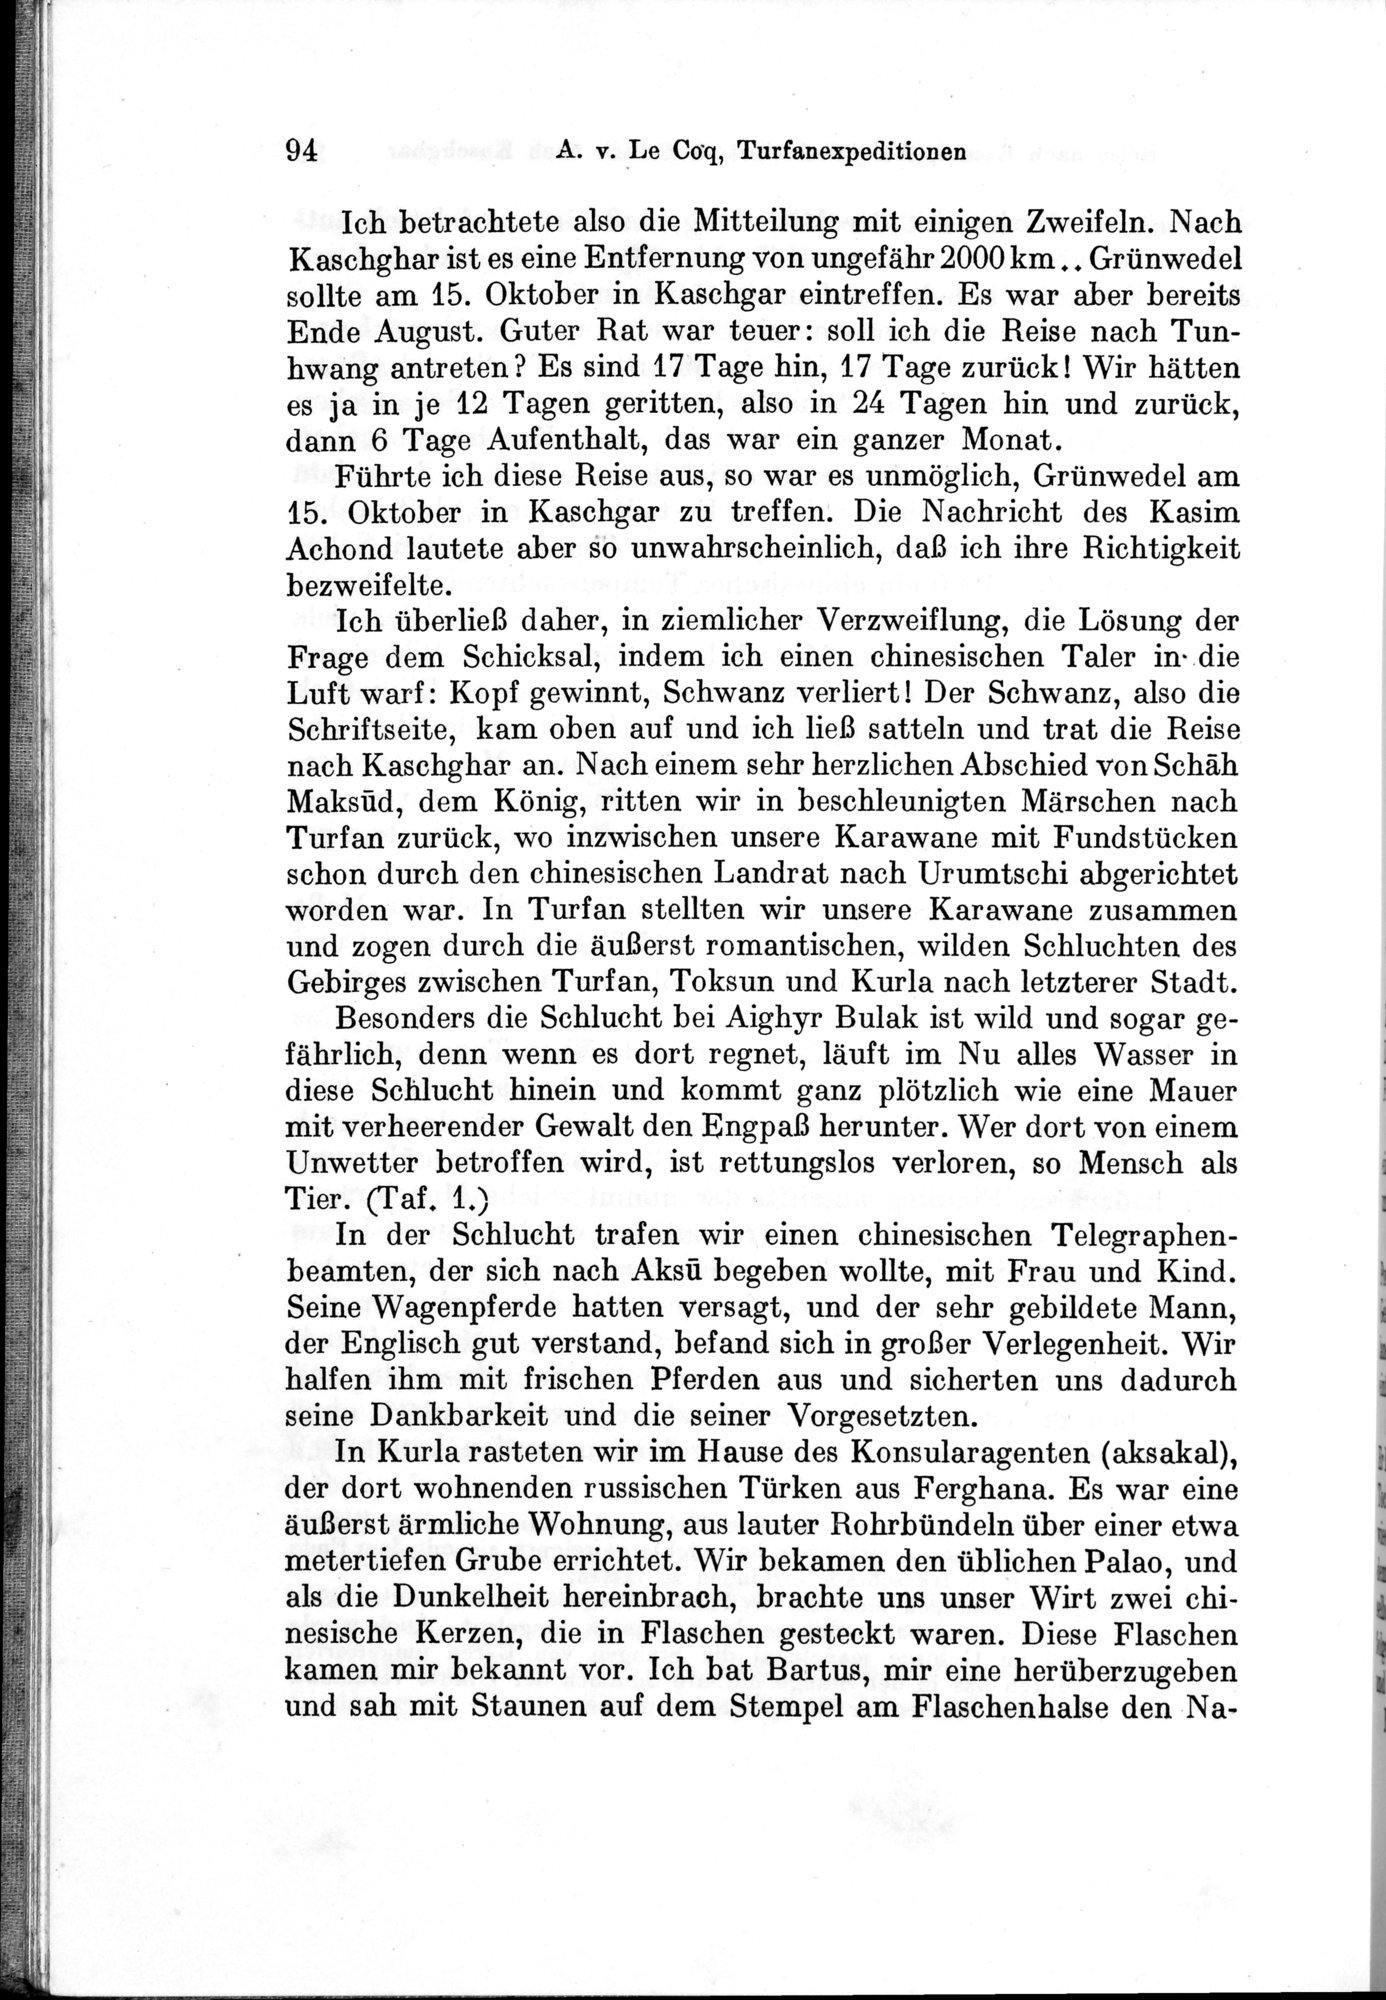 Auf Hellas Spuren in Ostturkistan : vol.1 / Page 138 (Grayscale High Resolution Image)